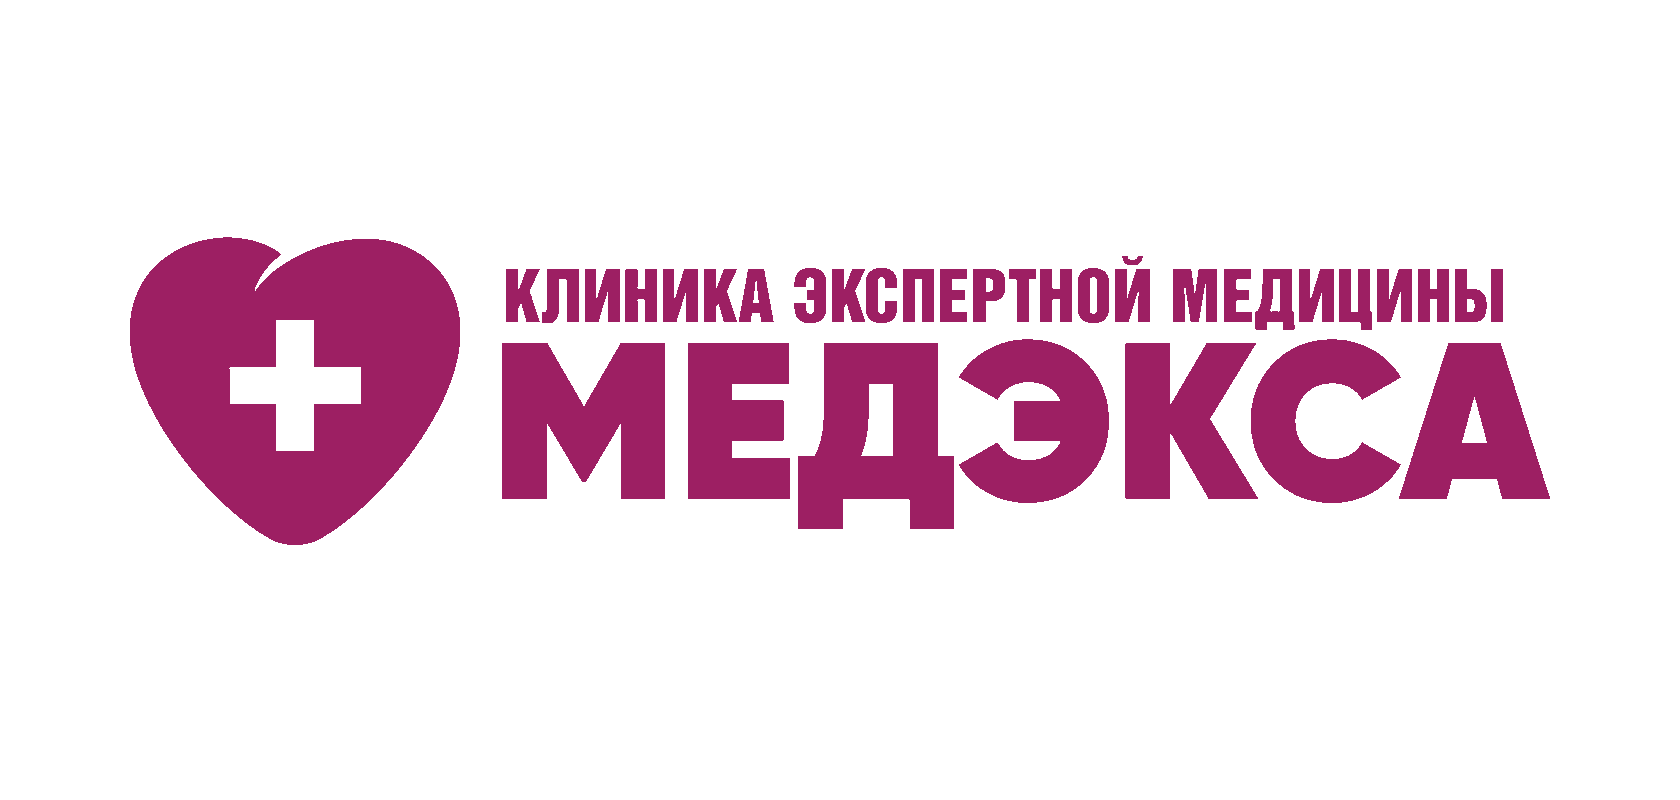 Клиника экспертной медицины МЕДЭКСА Красноярск